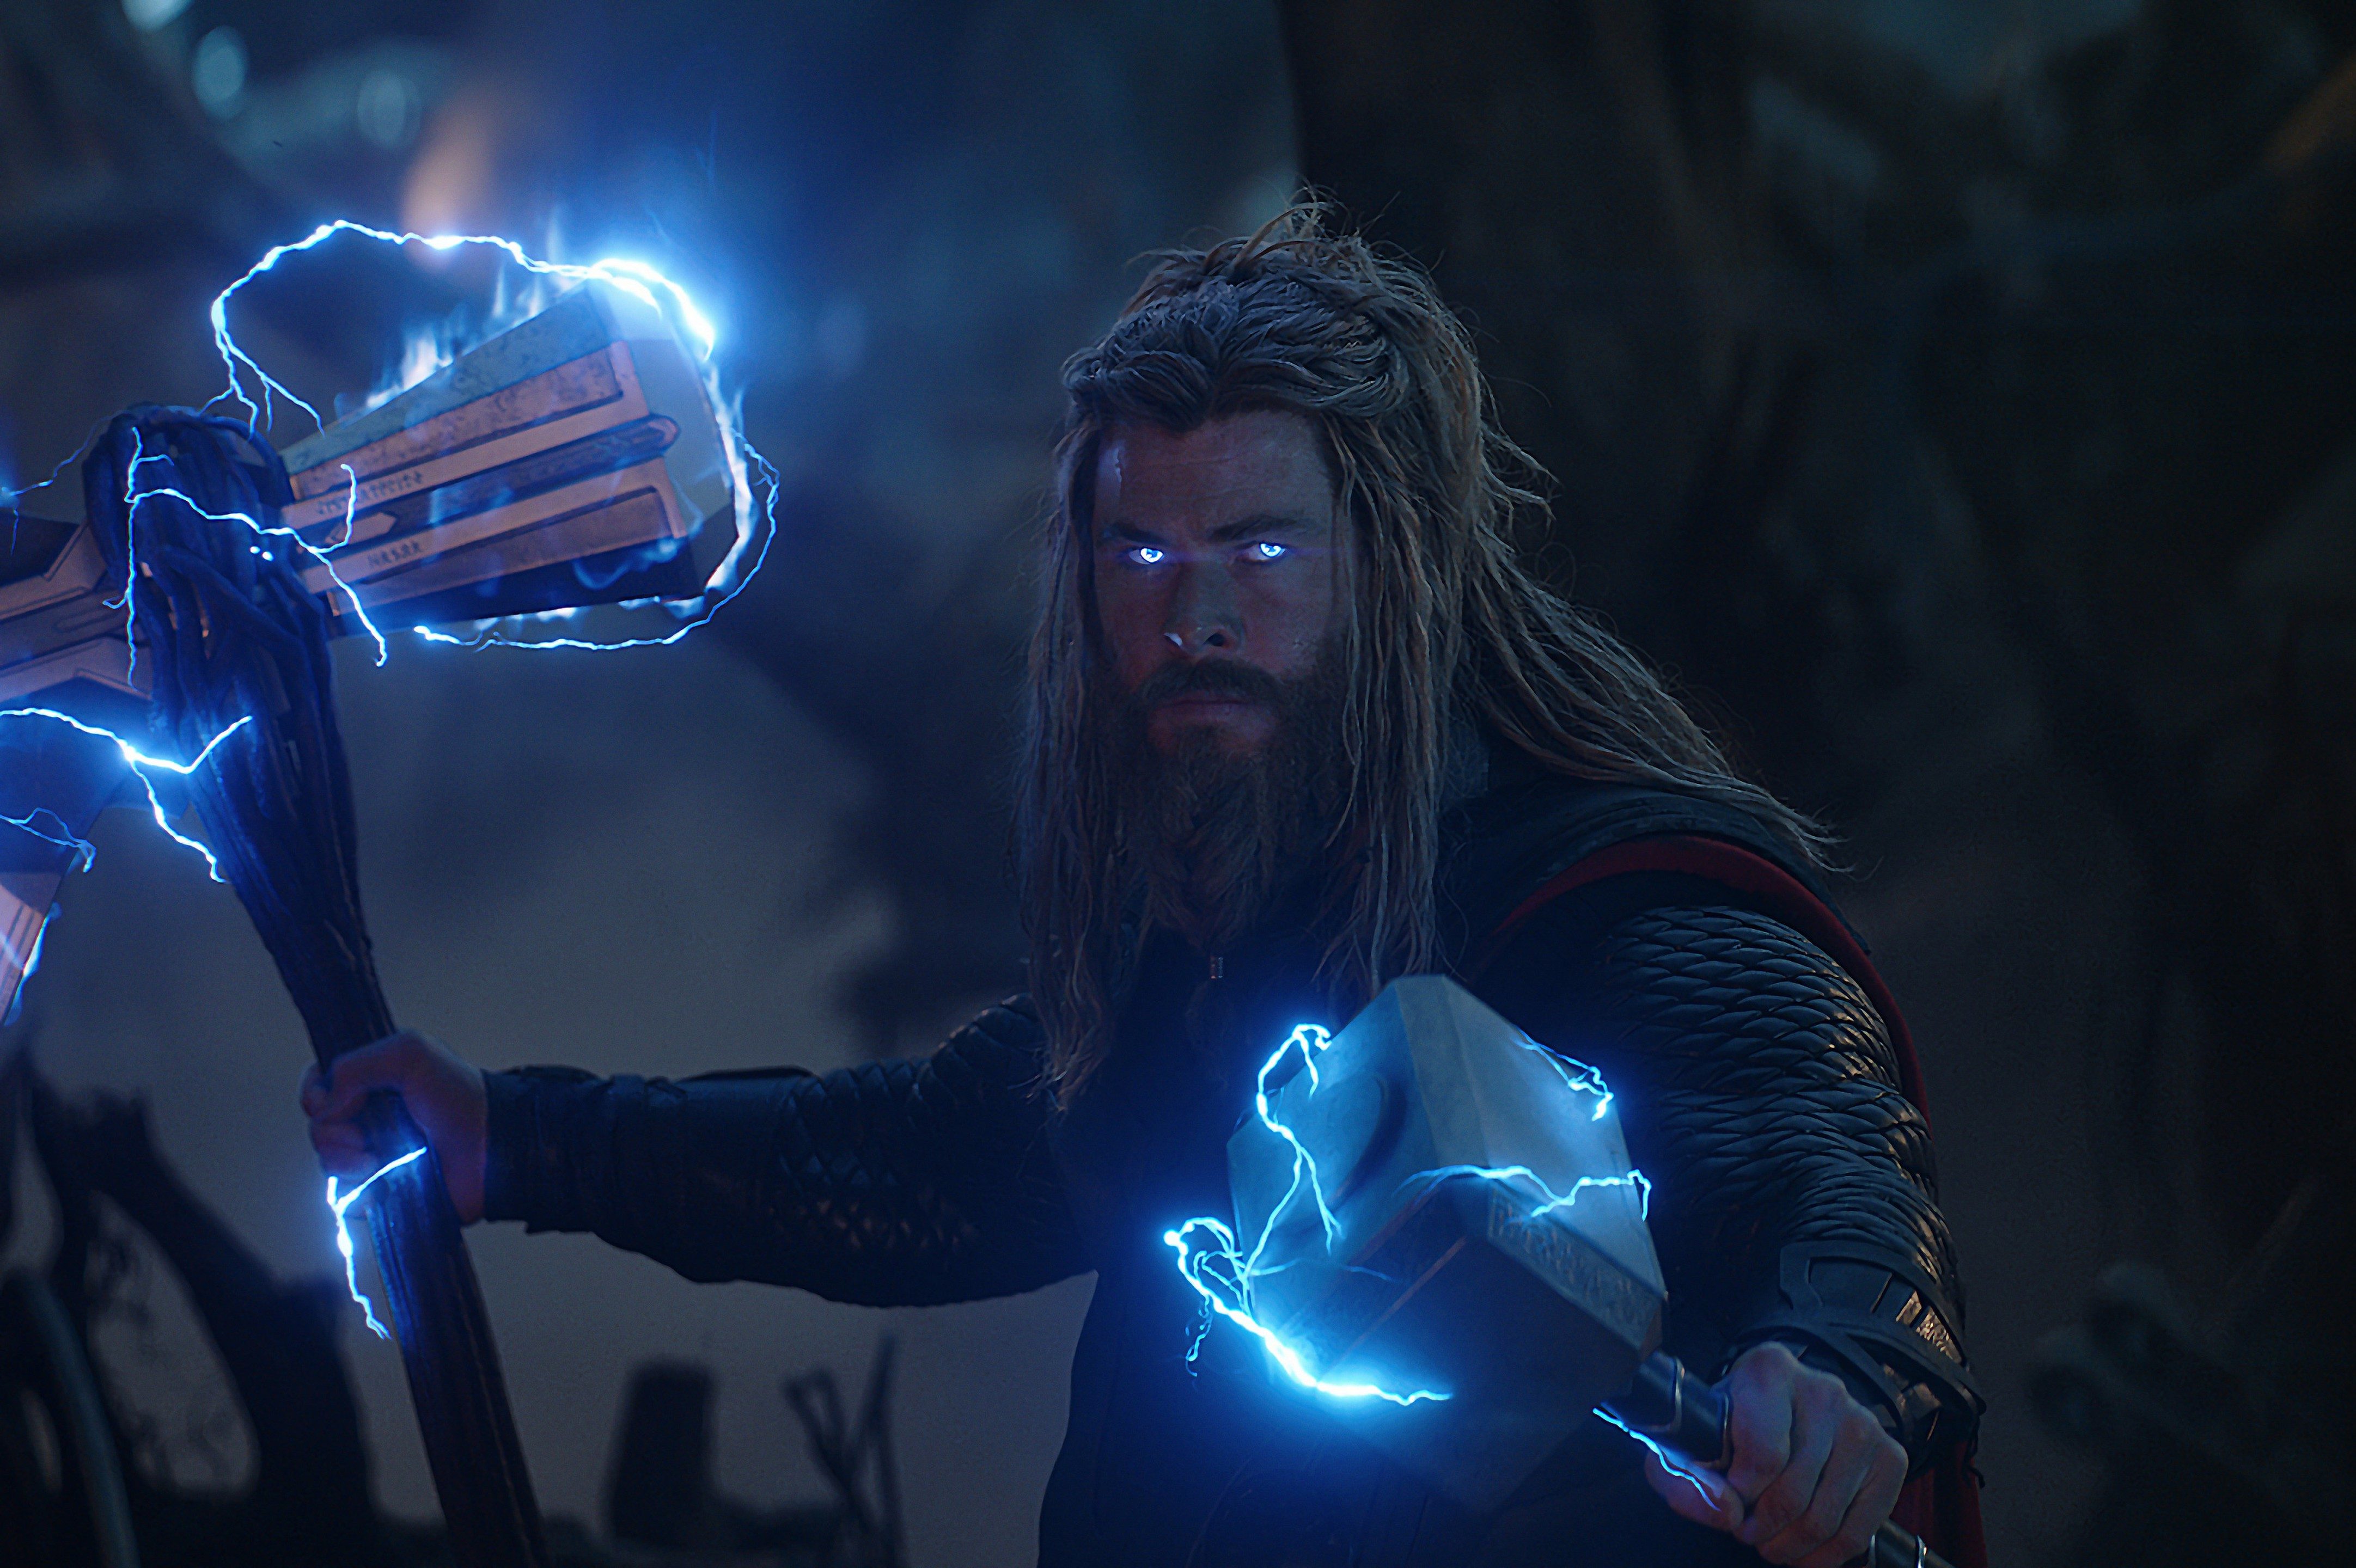 Thor in Avengers: Endgame